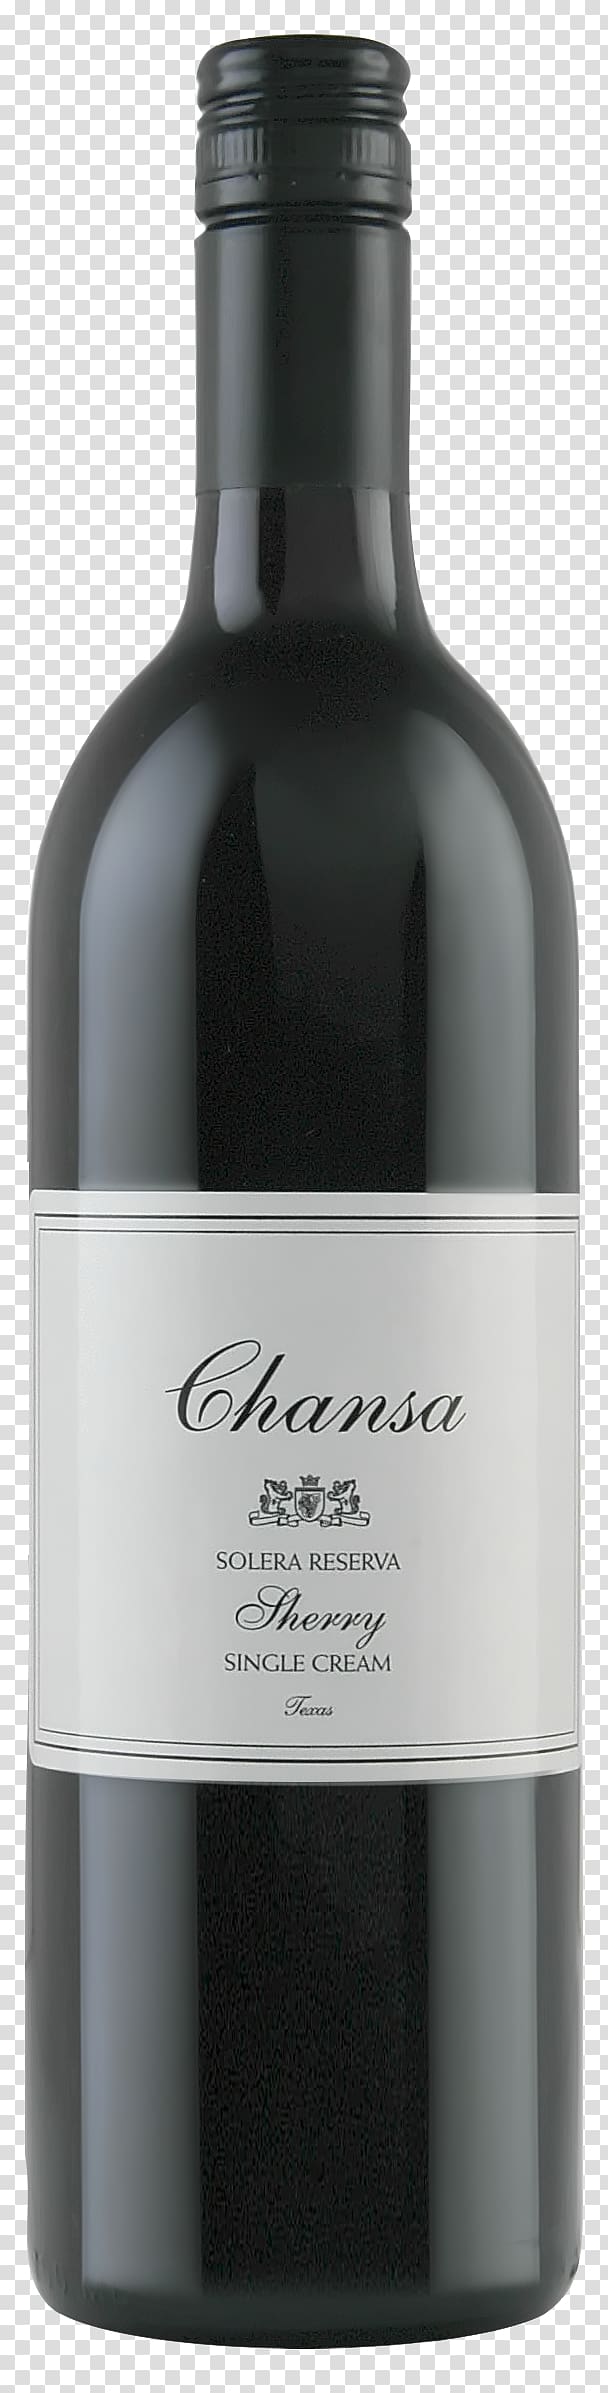 Wine Refosco dal Peduncolo Rosso Sauvignon blanc Cabernet Sauvignon, wine transparent background PNG clipart